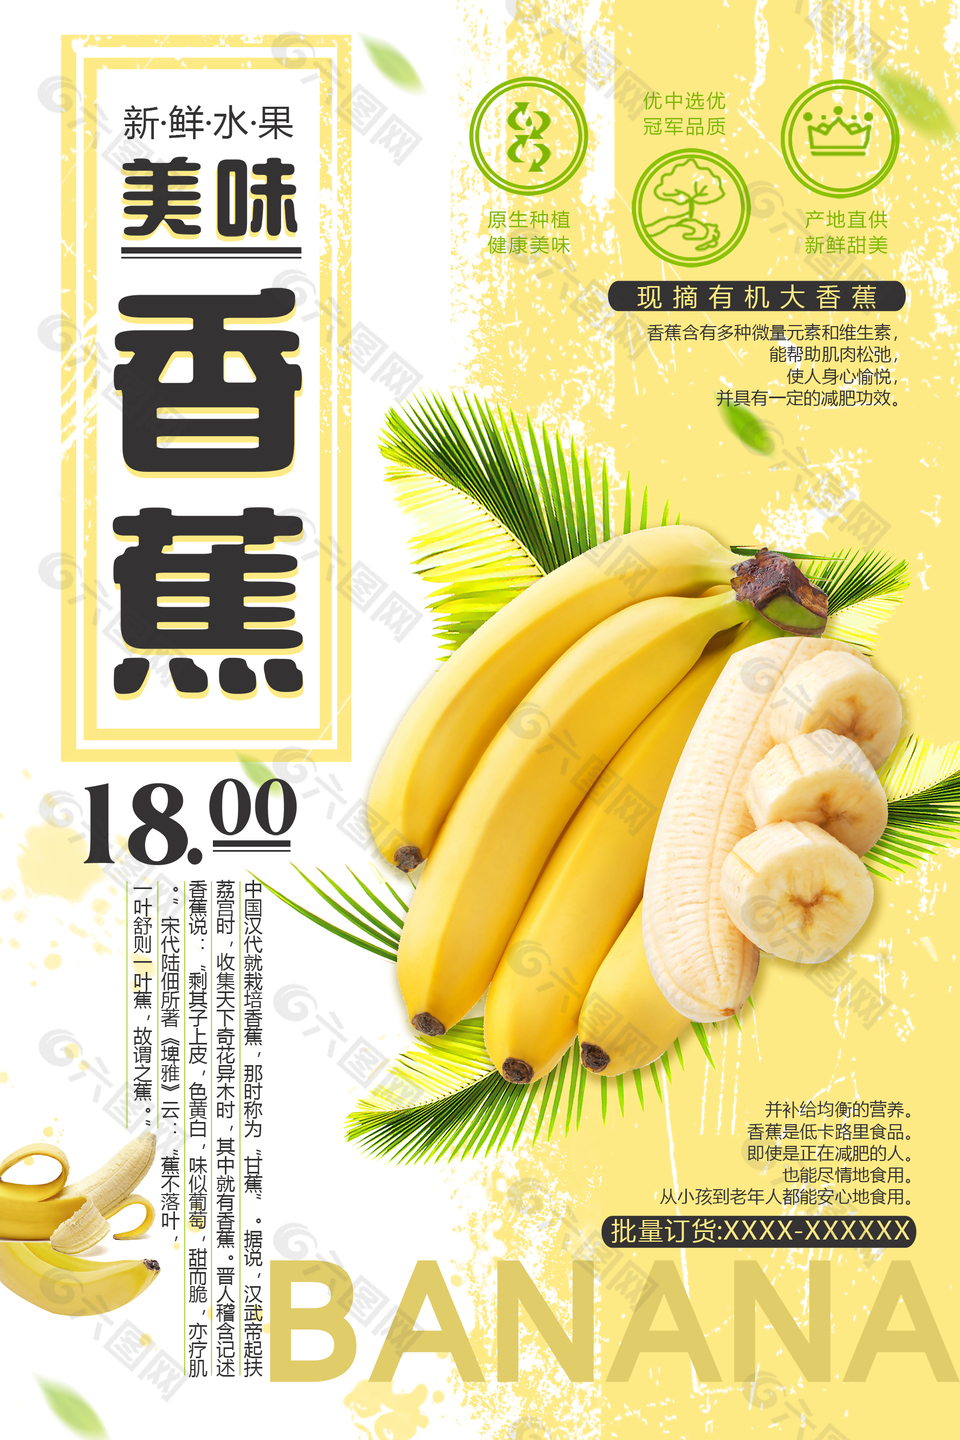 精品香蕉优惠活动海报